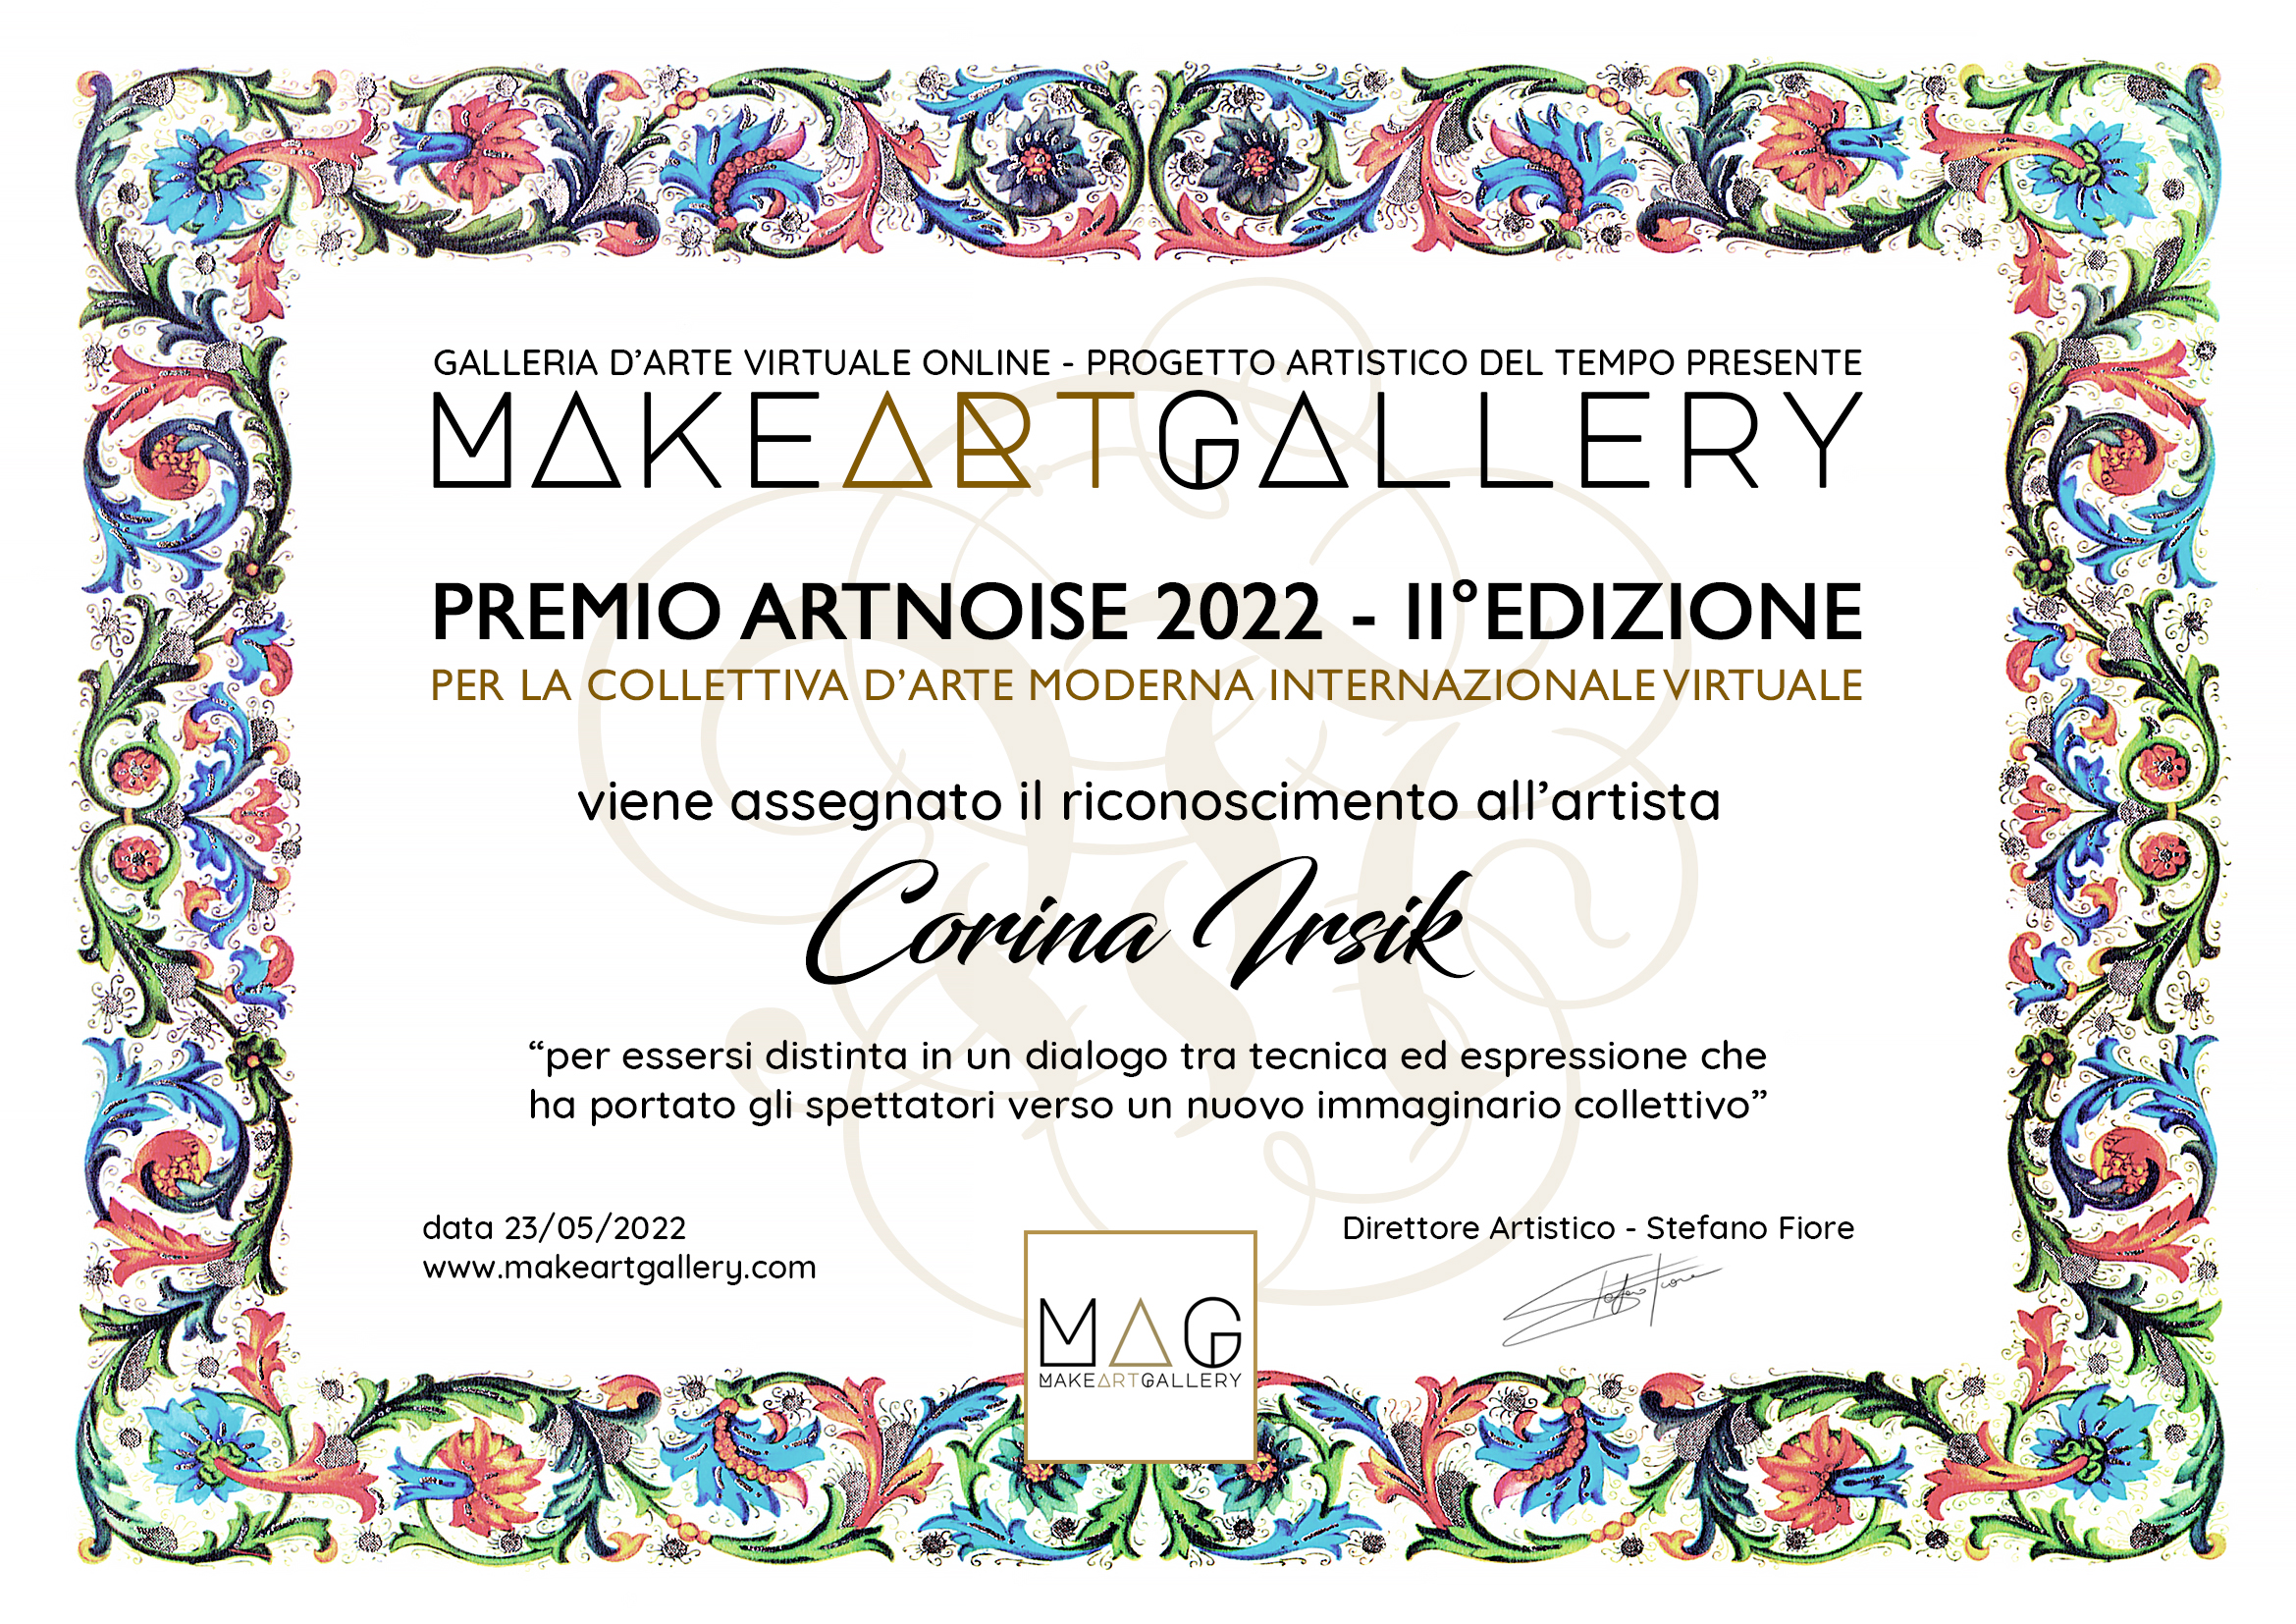 Premio Artistico Make Art Gallery ArtNoise 2022 | Mostra virtuale online